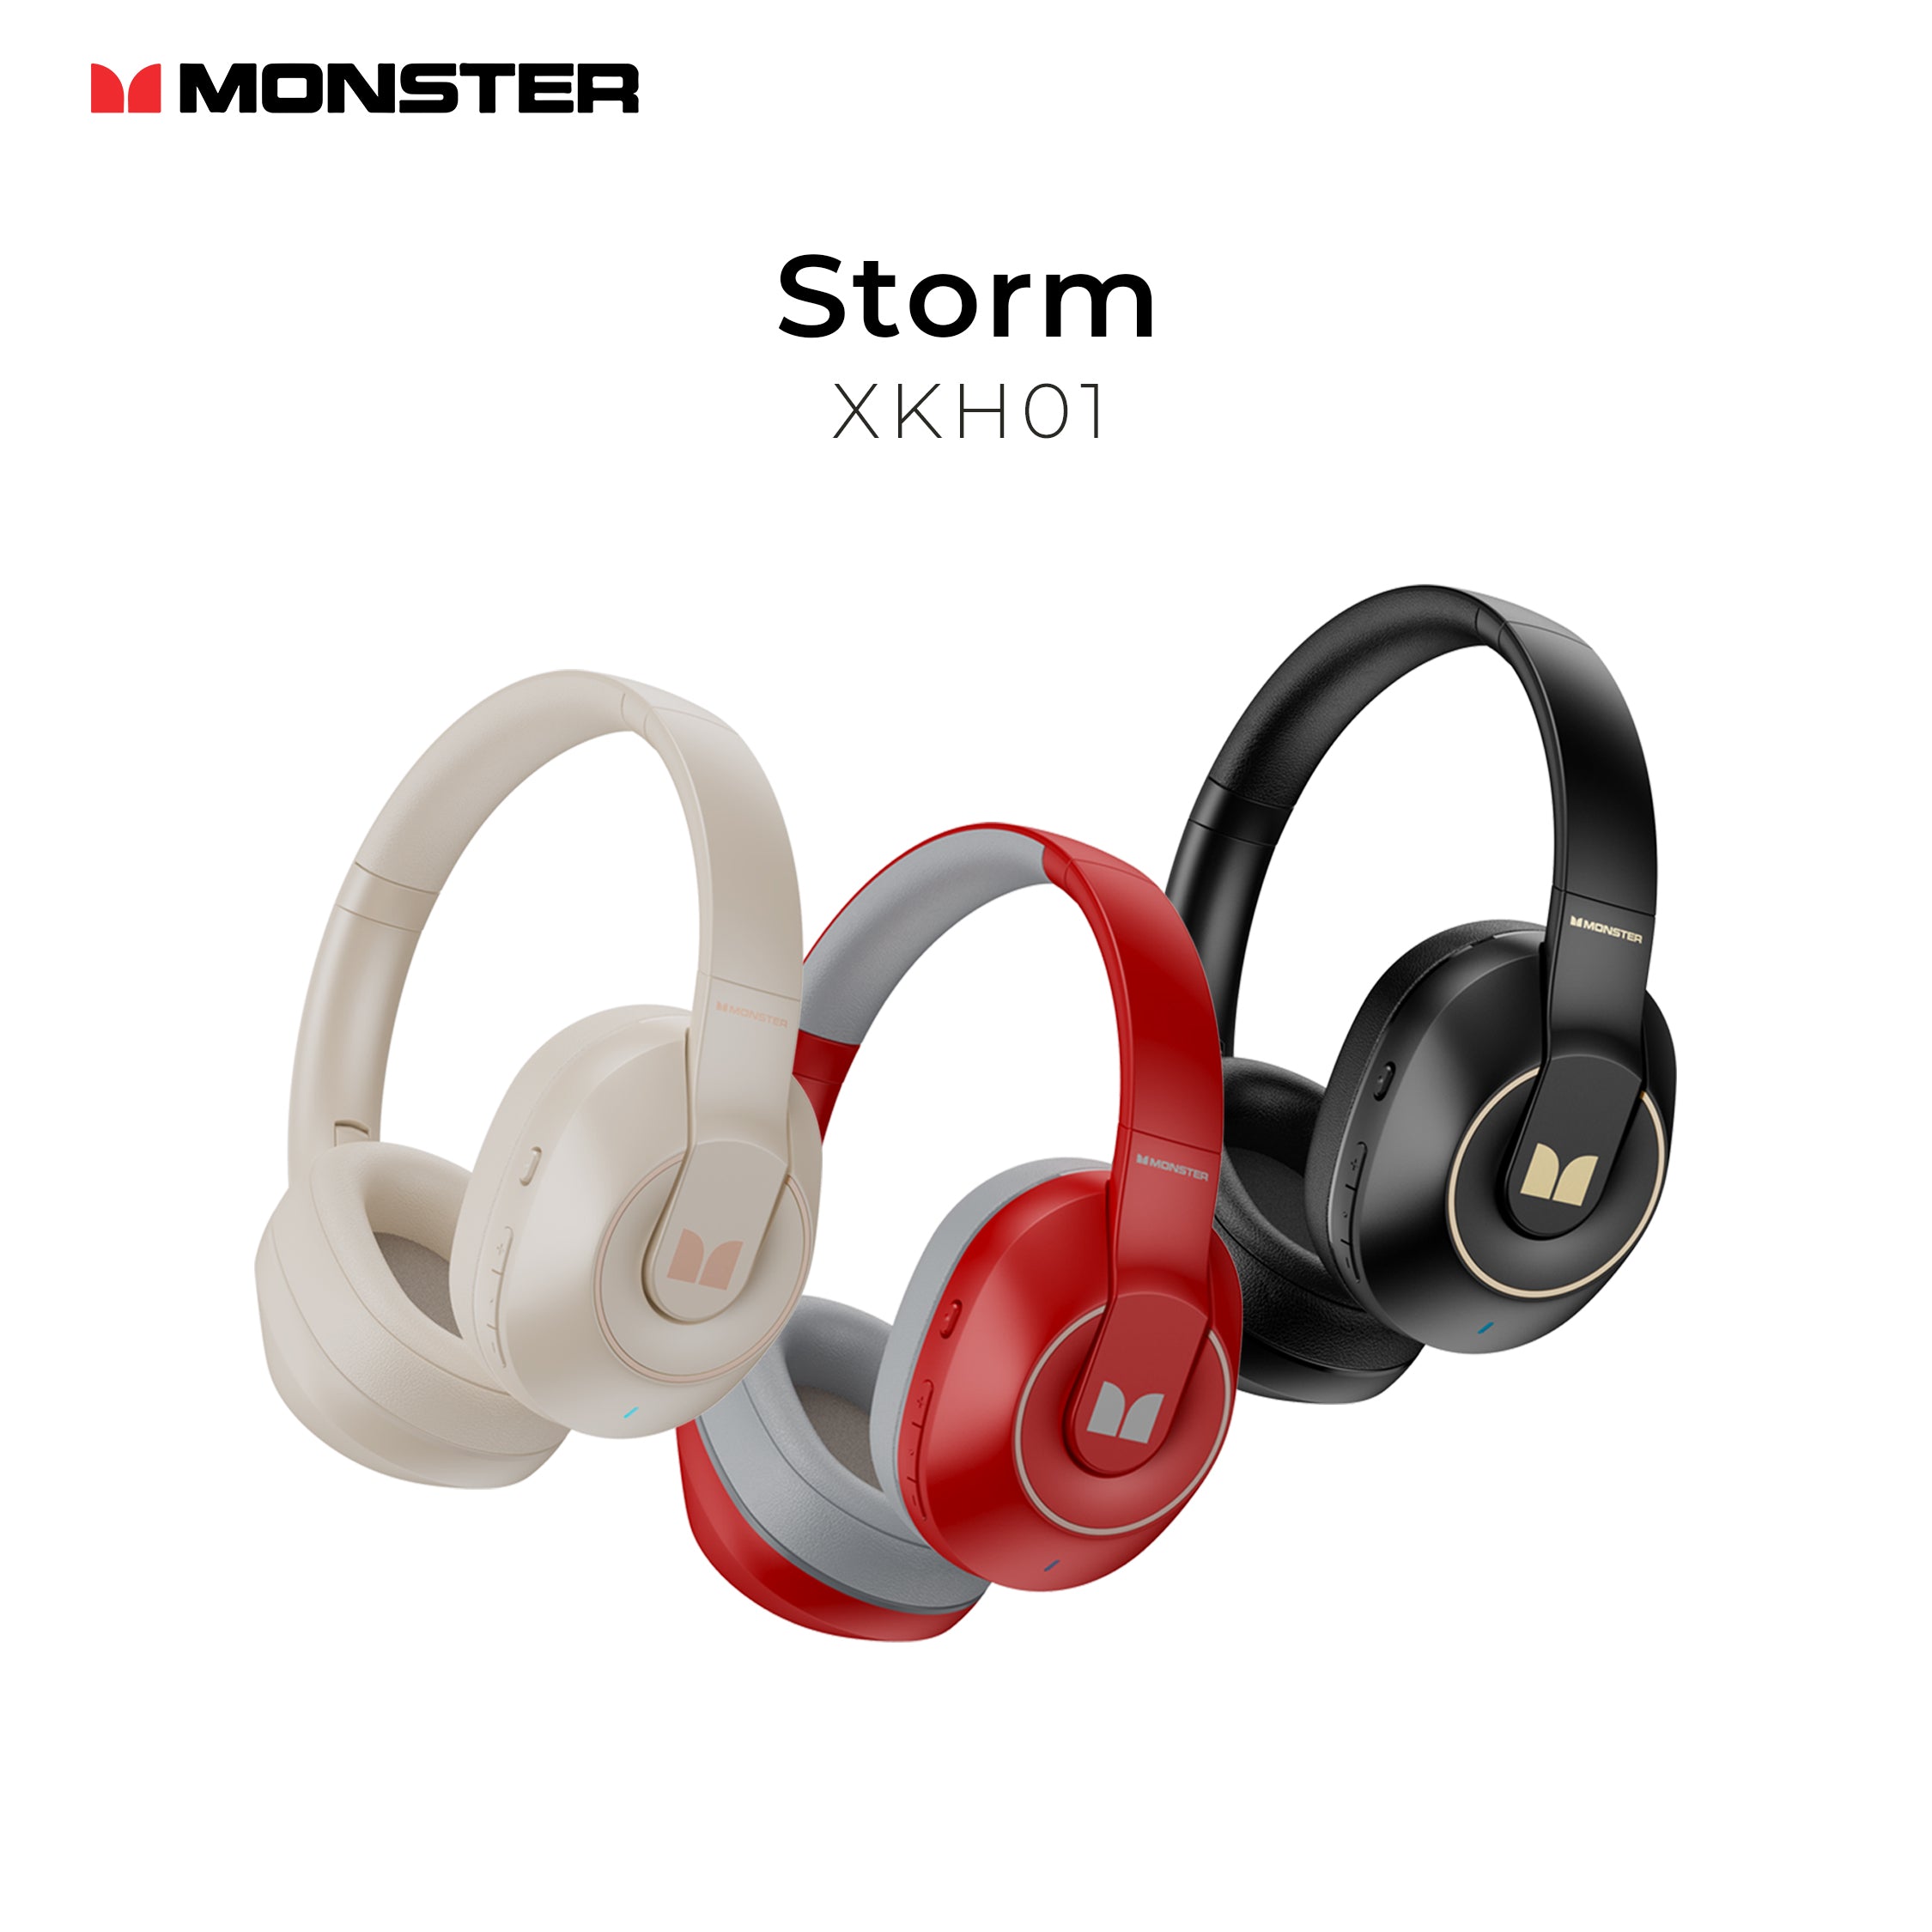 Monster Storm Headset XKH01